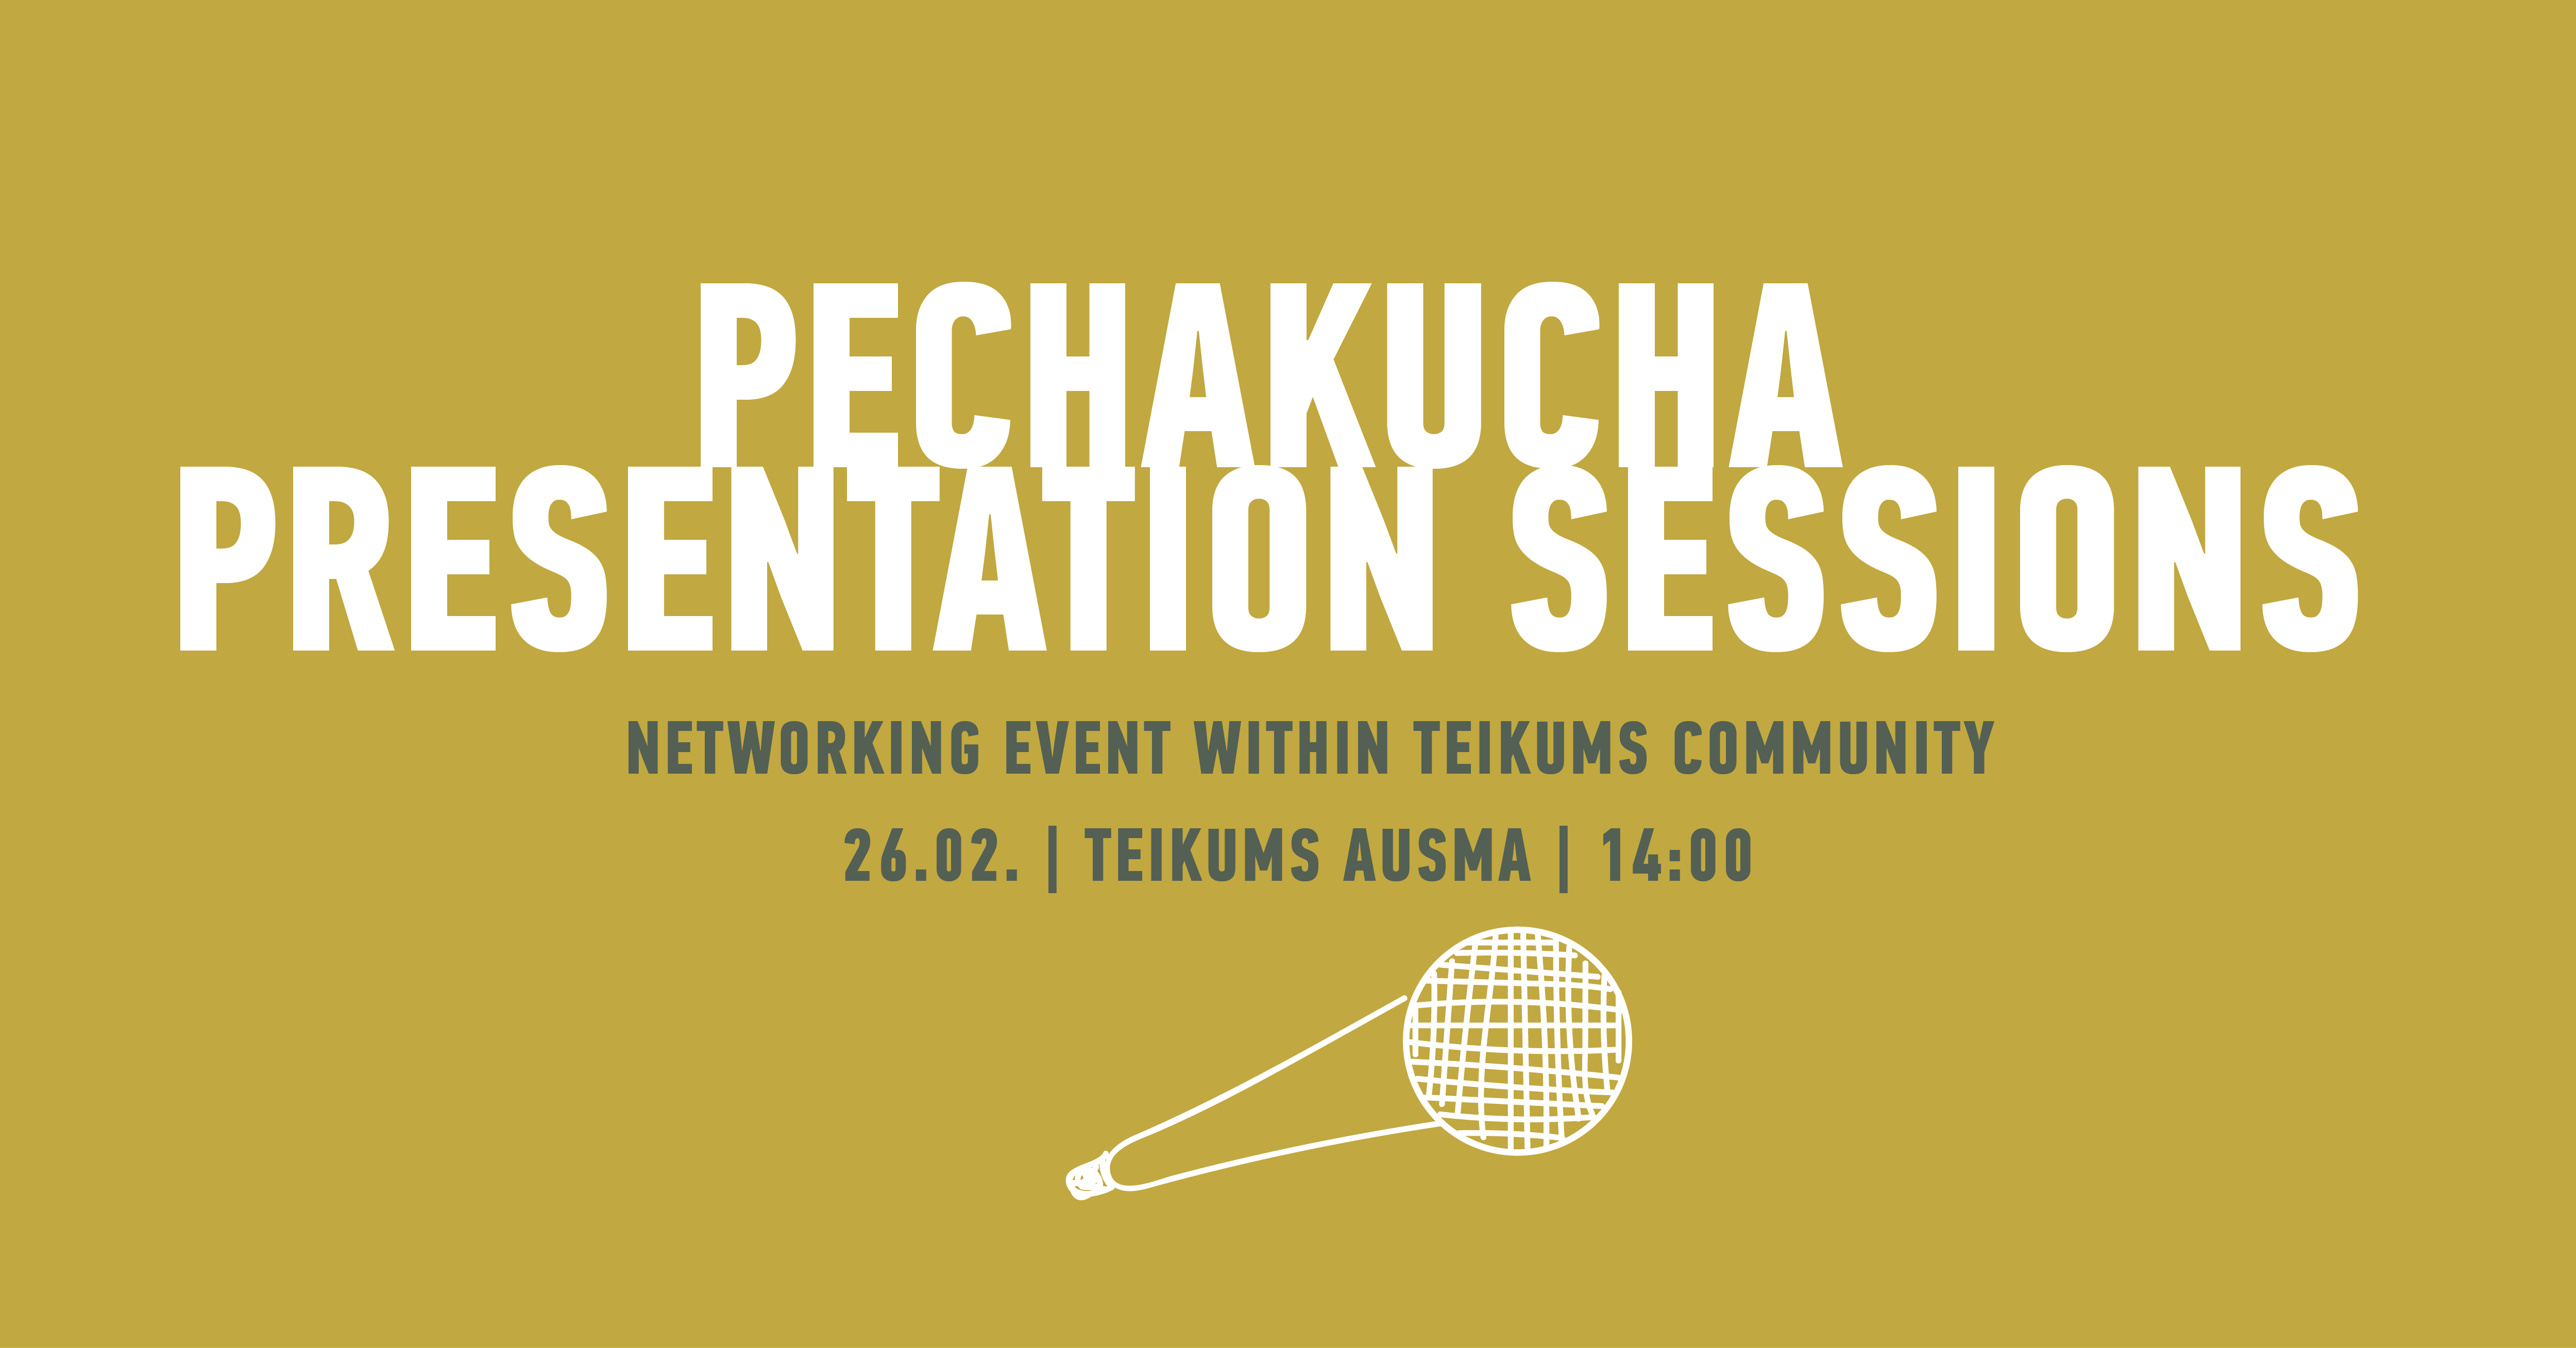 PechaKucha presentation sessions